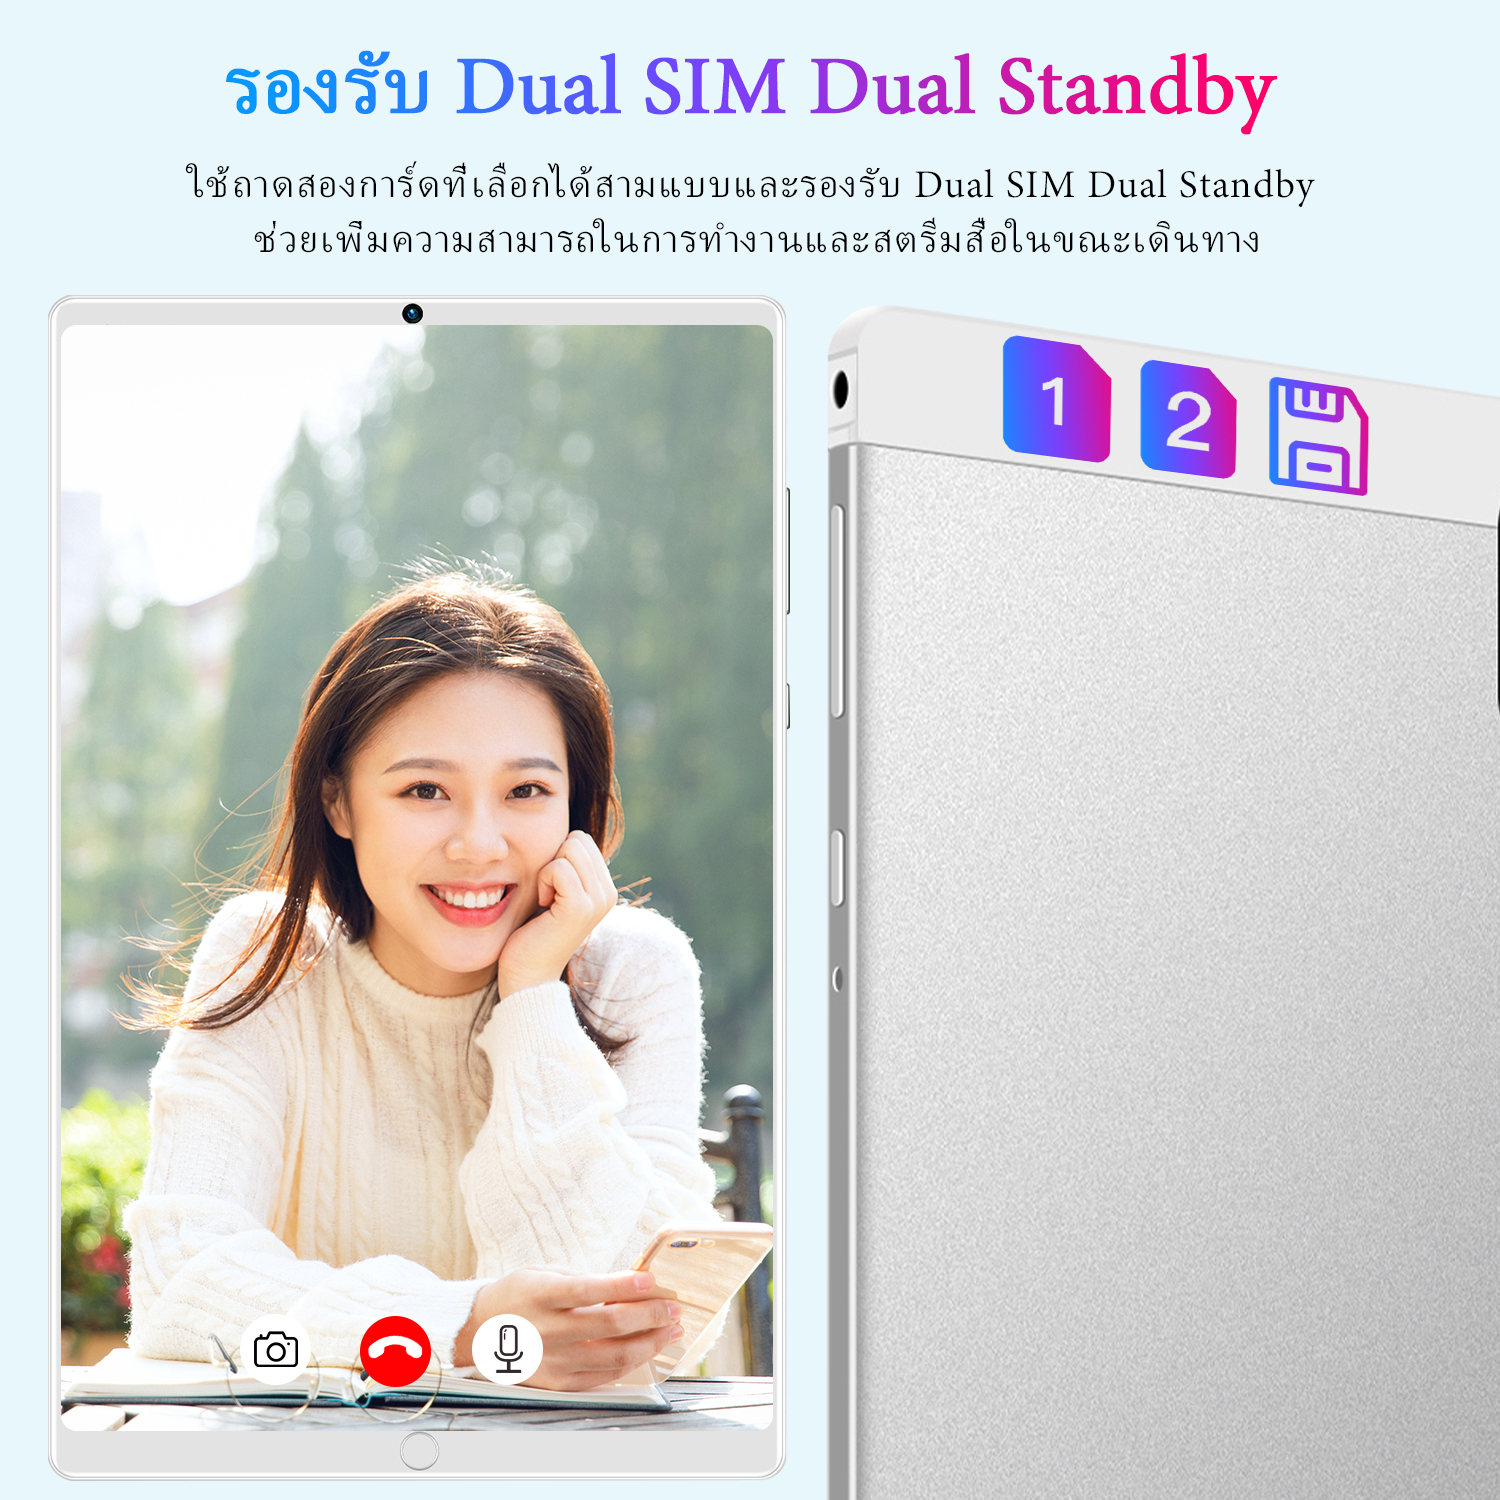 มุมมองเพิ่มเติมของสินค้า [แท็บเล็ต+แป้นพิมพ์] ใหม่ Sg Galaxy Tab 10.4 นิ้ว แท็บเล็ตถูกๆ Tablet RAM16G ROM512G โทรได้ Full HD แท็บเล็ตราคาถูก Andorid 11.0 จัดส่งฟรี รองรับภาษาไทย หน่วยประมวลผล 11-core แท็บเล็ตโทรได้ 4g/5G แท็บเล็ตสำหรับเล่นเกมราคาถูก แทปเล็ตของแท้2022